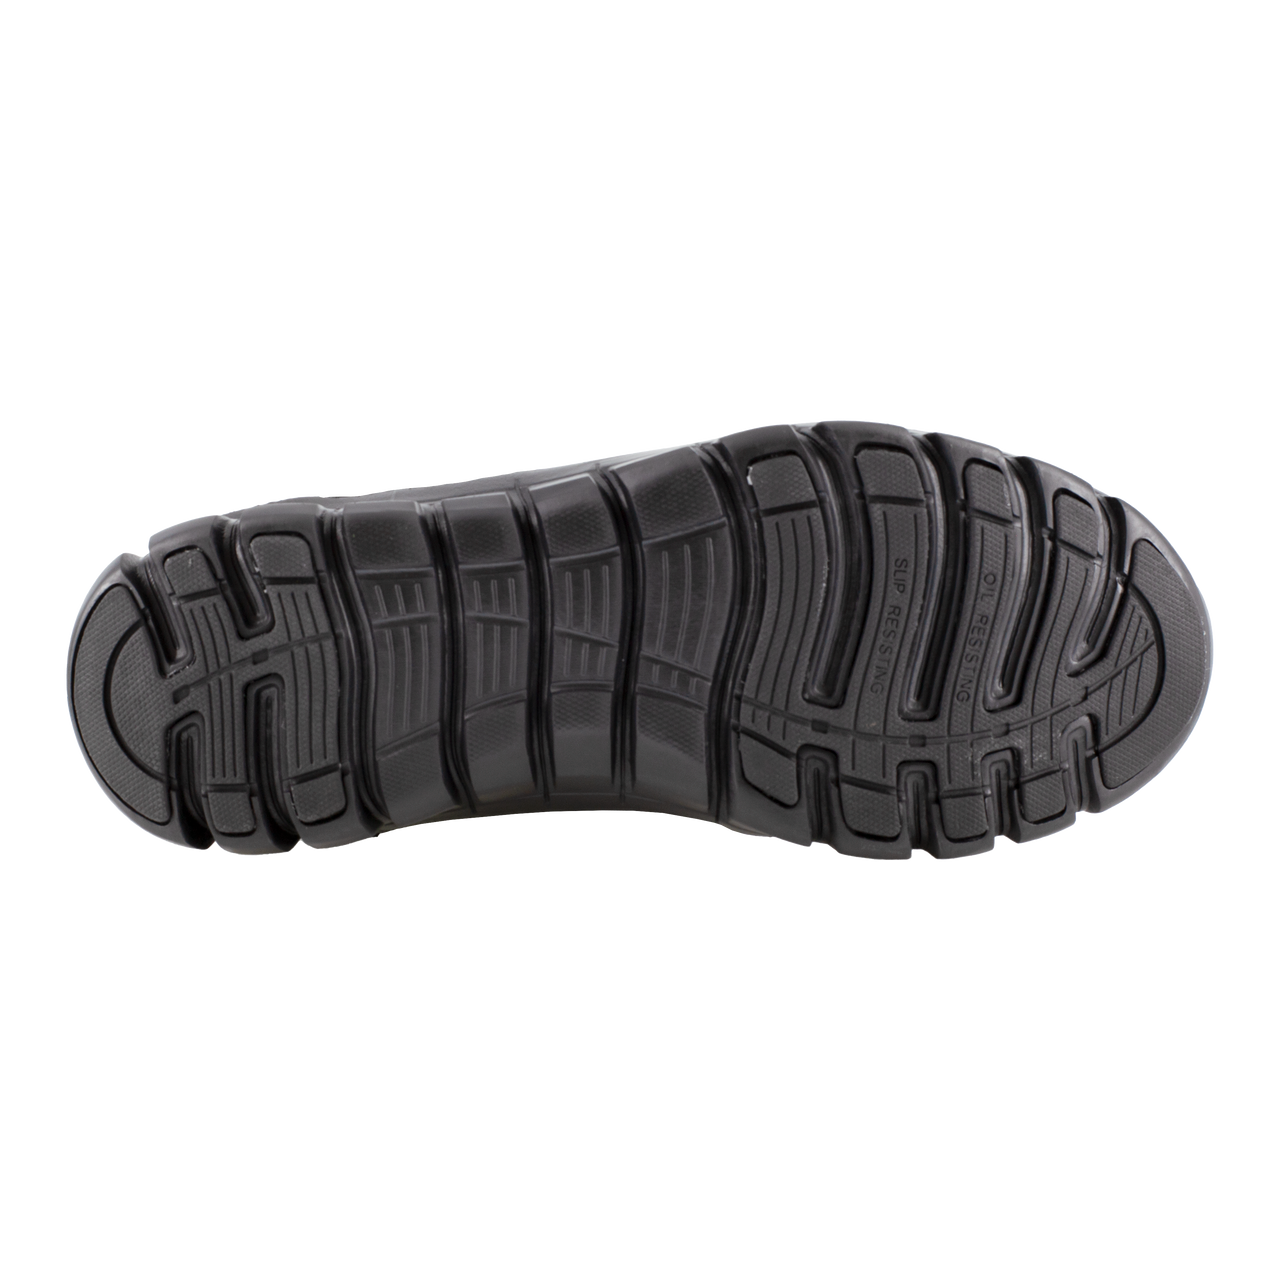 Reebok Men's Sublite Cushion Tactical Shoe RB8105